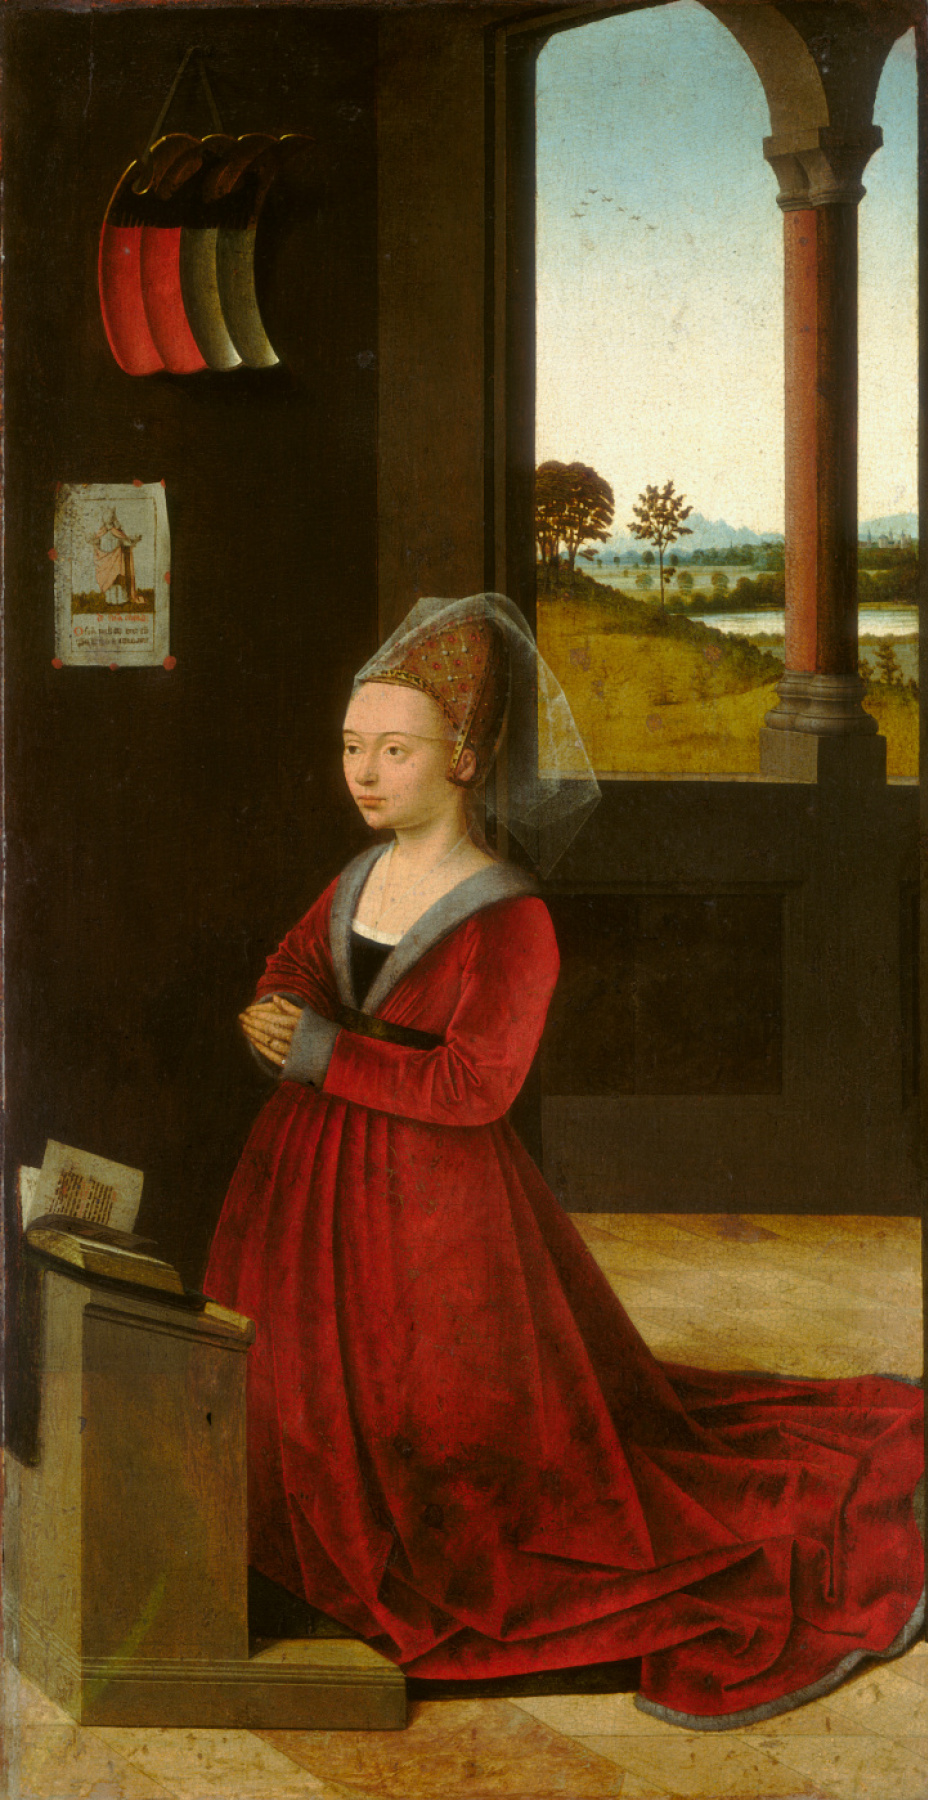 Petrus Christus. Portrait of a Woman